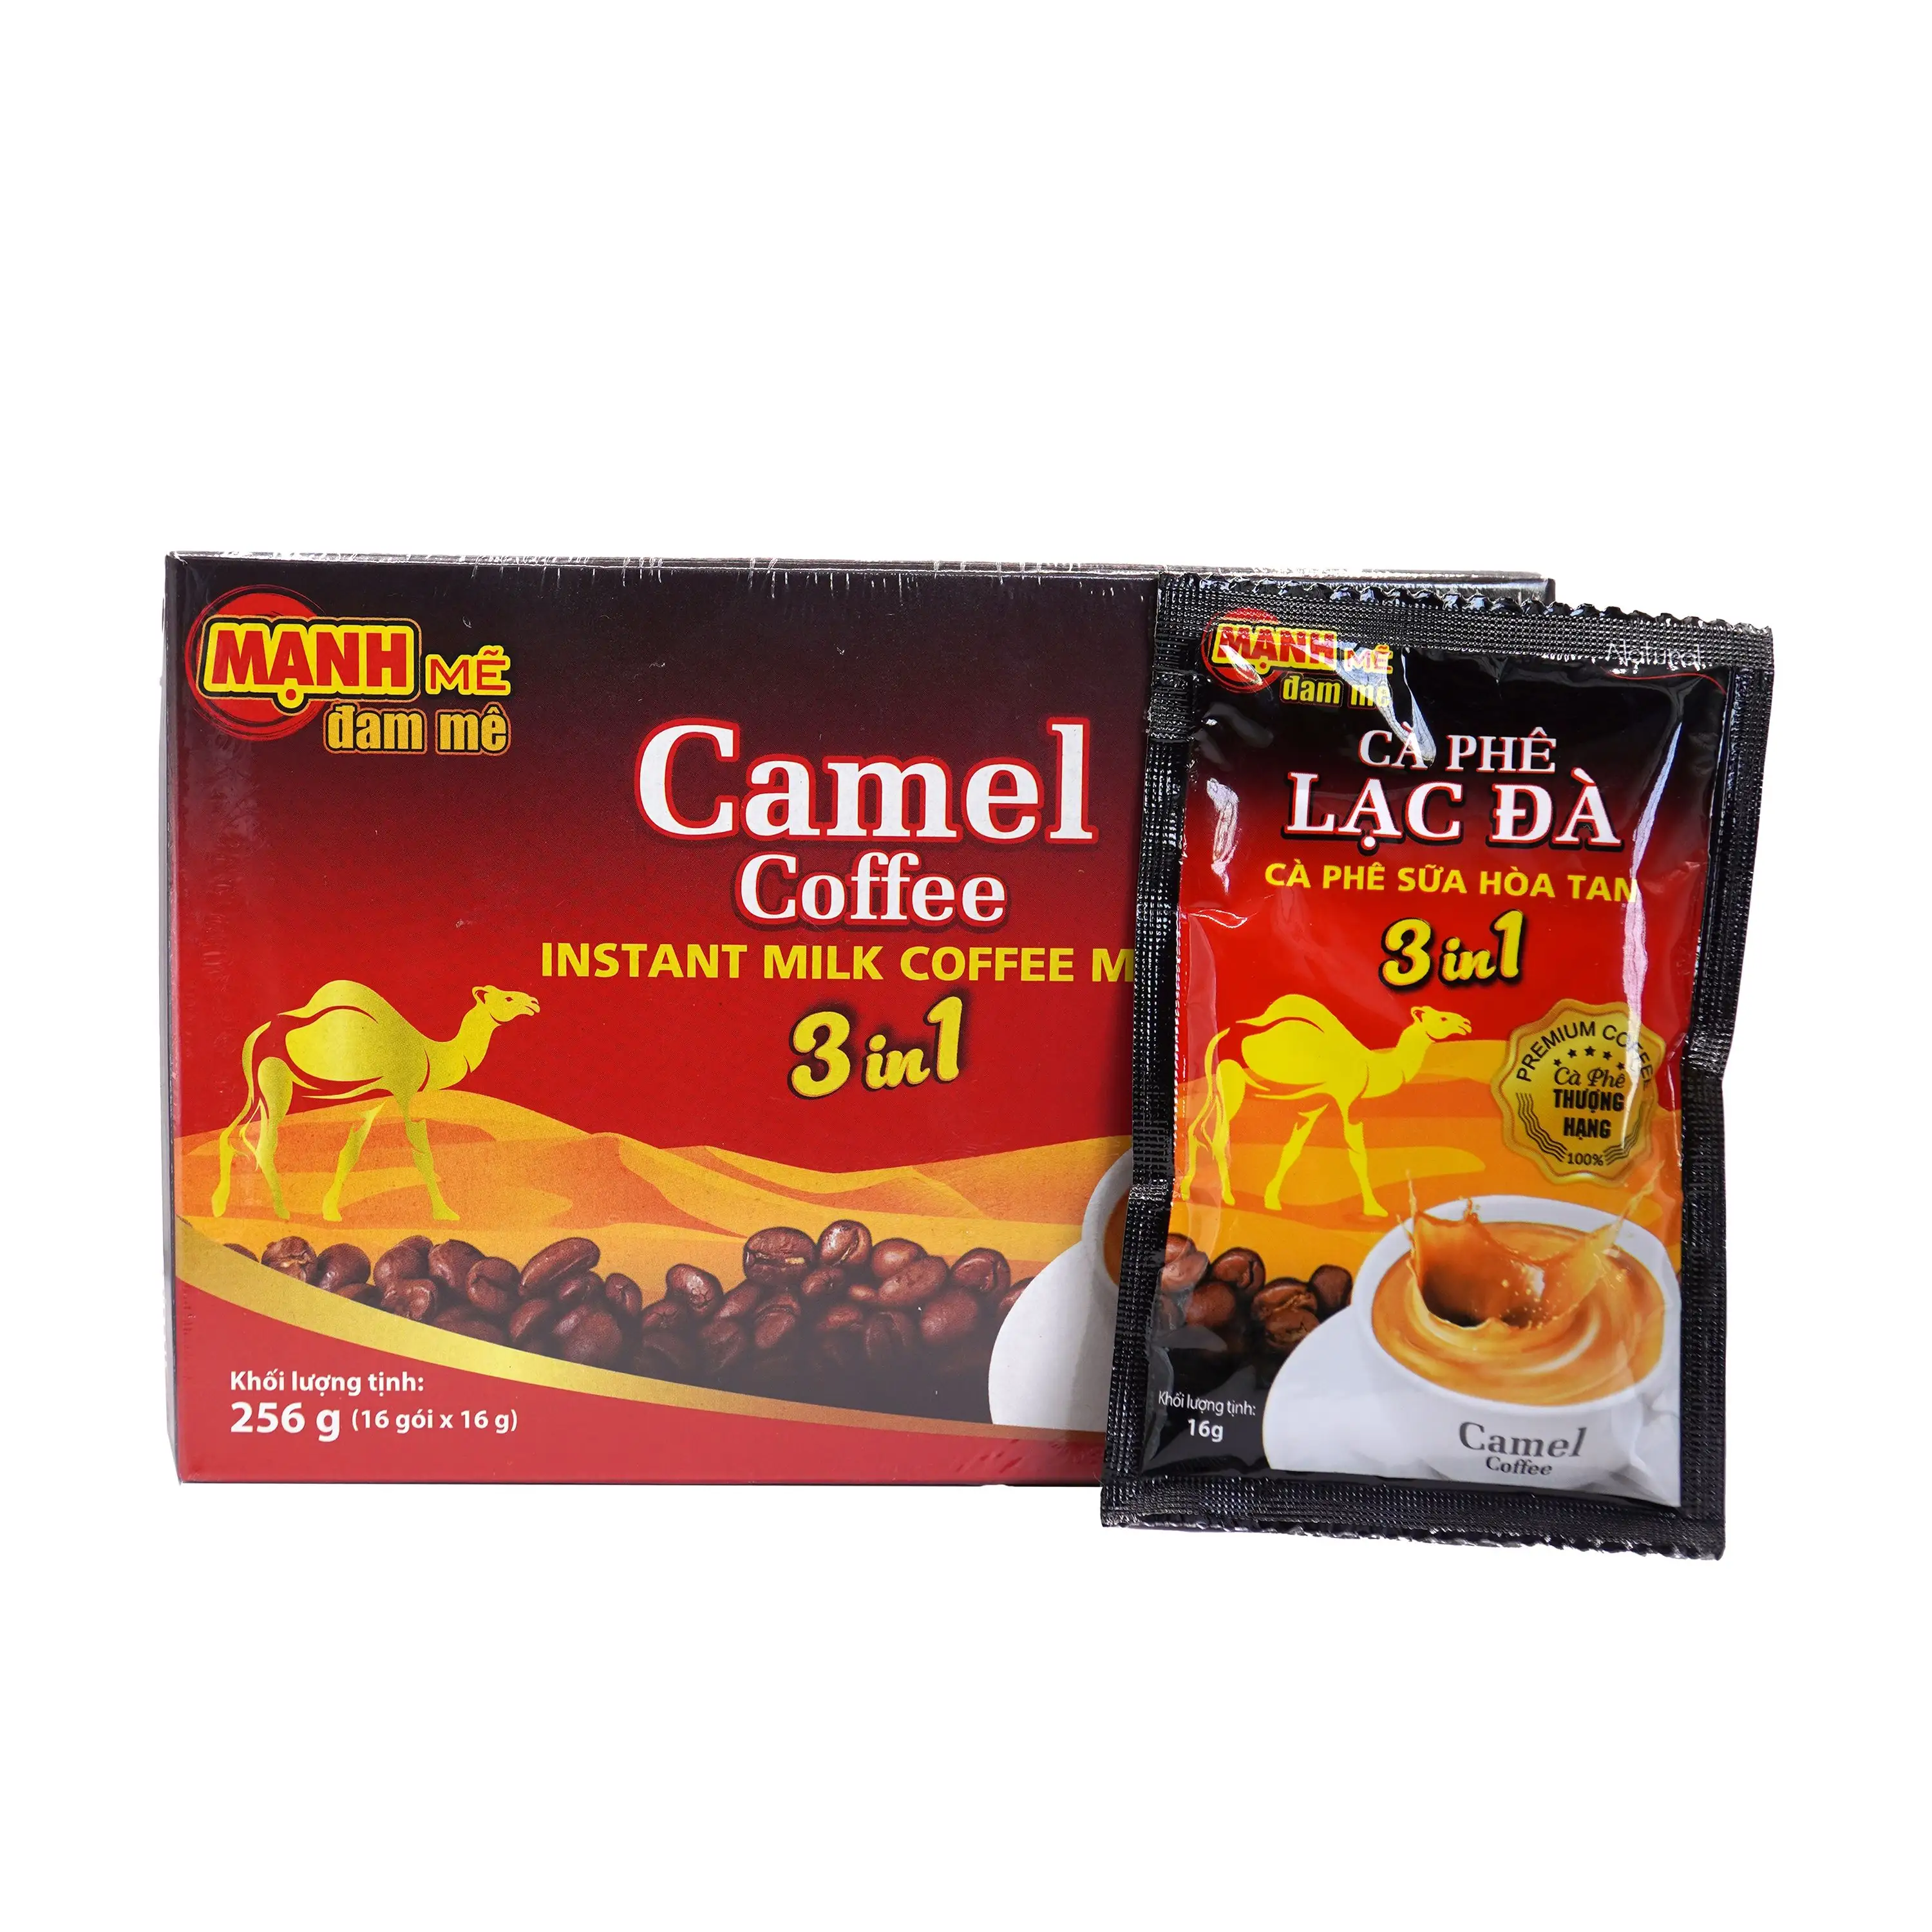 ISO HACCP認証を飲むために使用するインスタントコーヒー卸売貴重食品カスタマイズパッケージベトナムメーカー